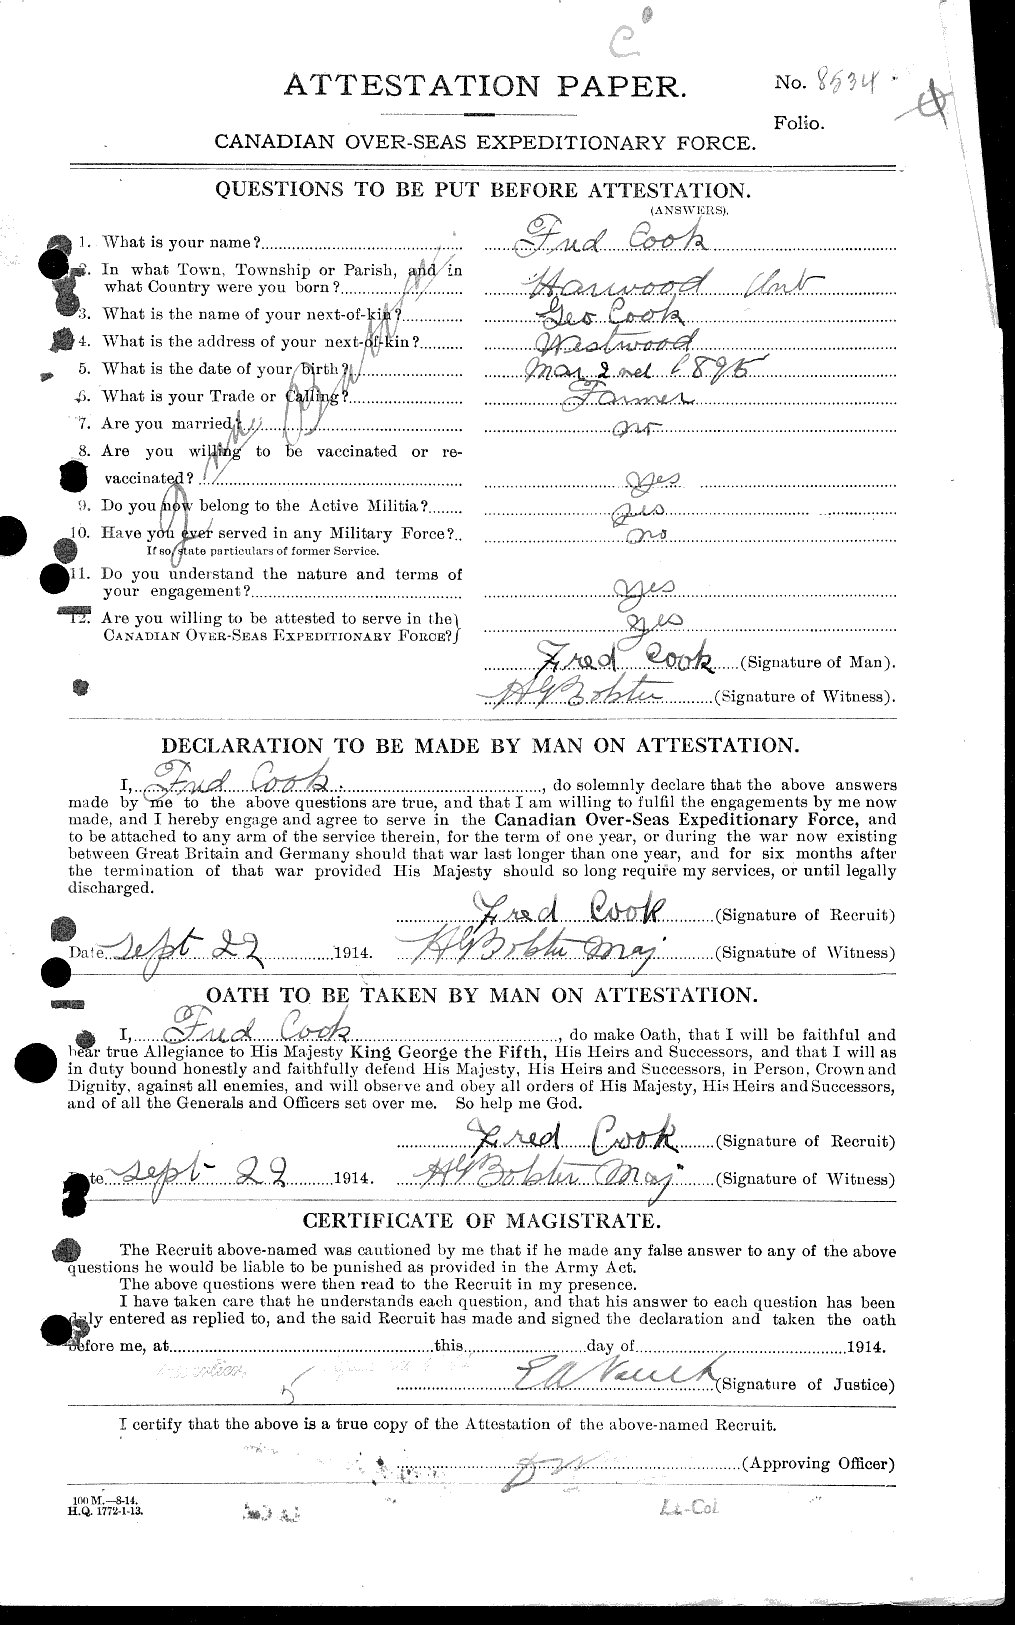 Dossiers du Personnel de la Première Guerre mondiale - CEC 041317a